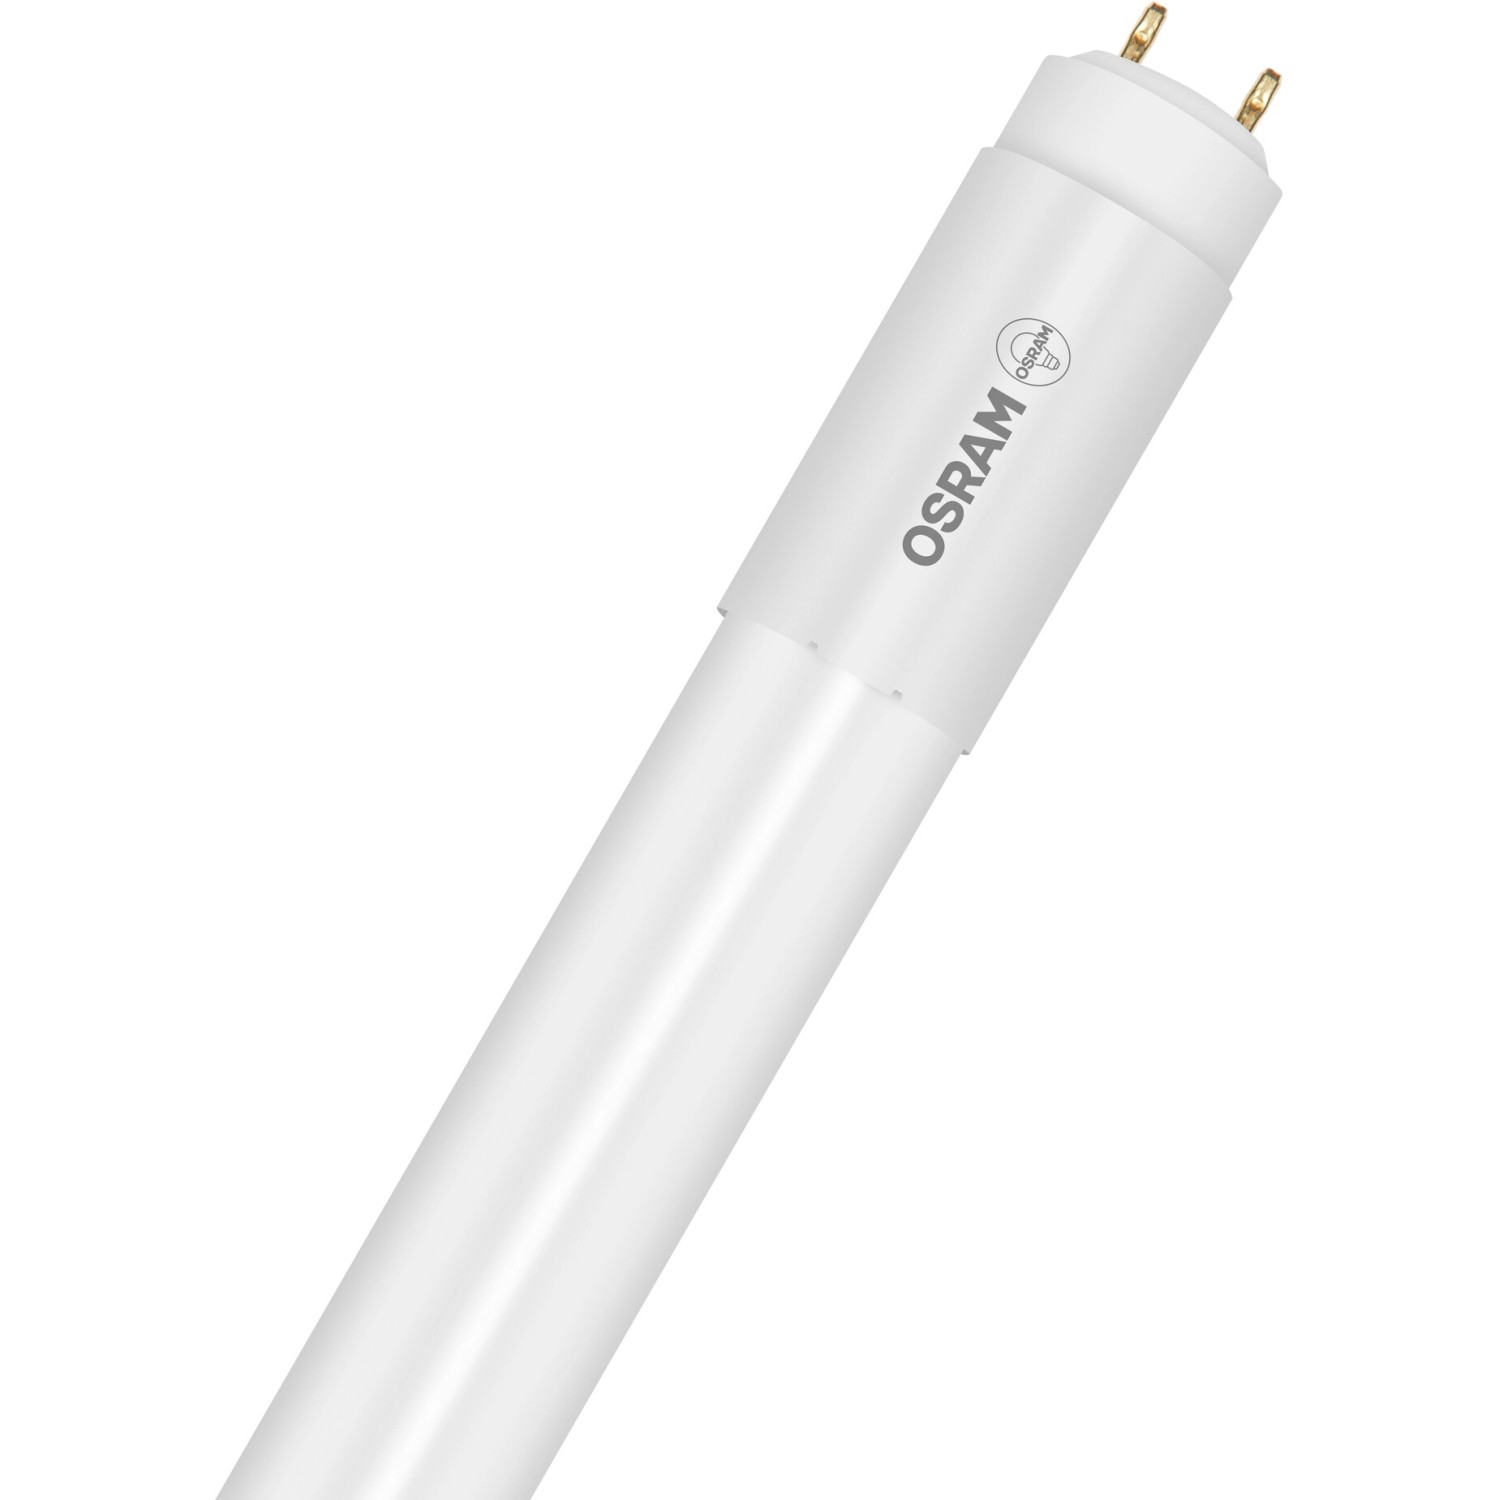 Osram LED-Leuchtstofflampen G13 Röhre18 W 1850 lm 121,1 cm x 2,8 cm Warmweiß